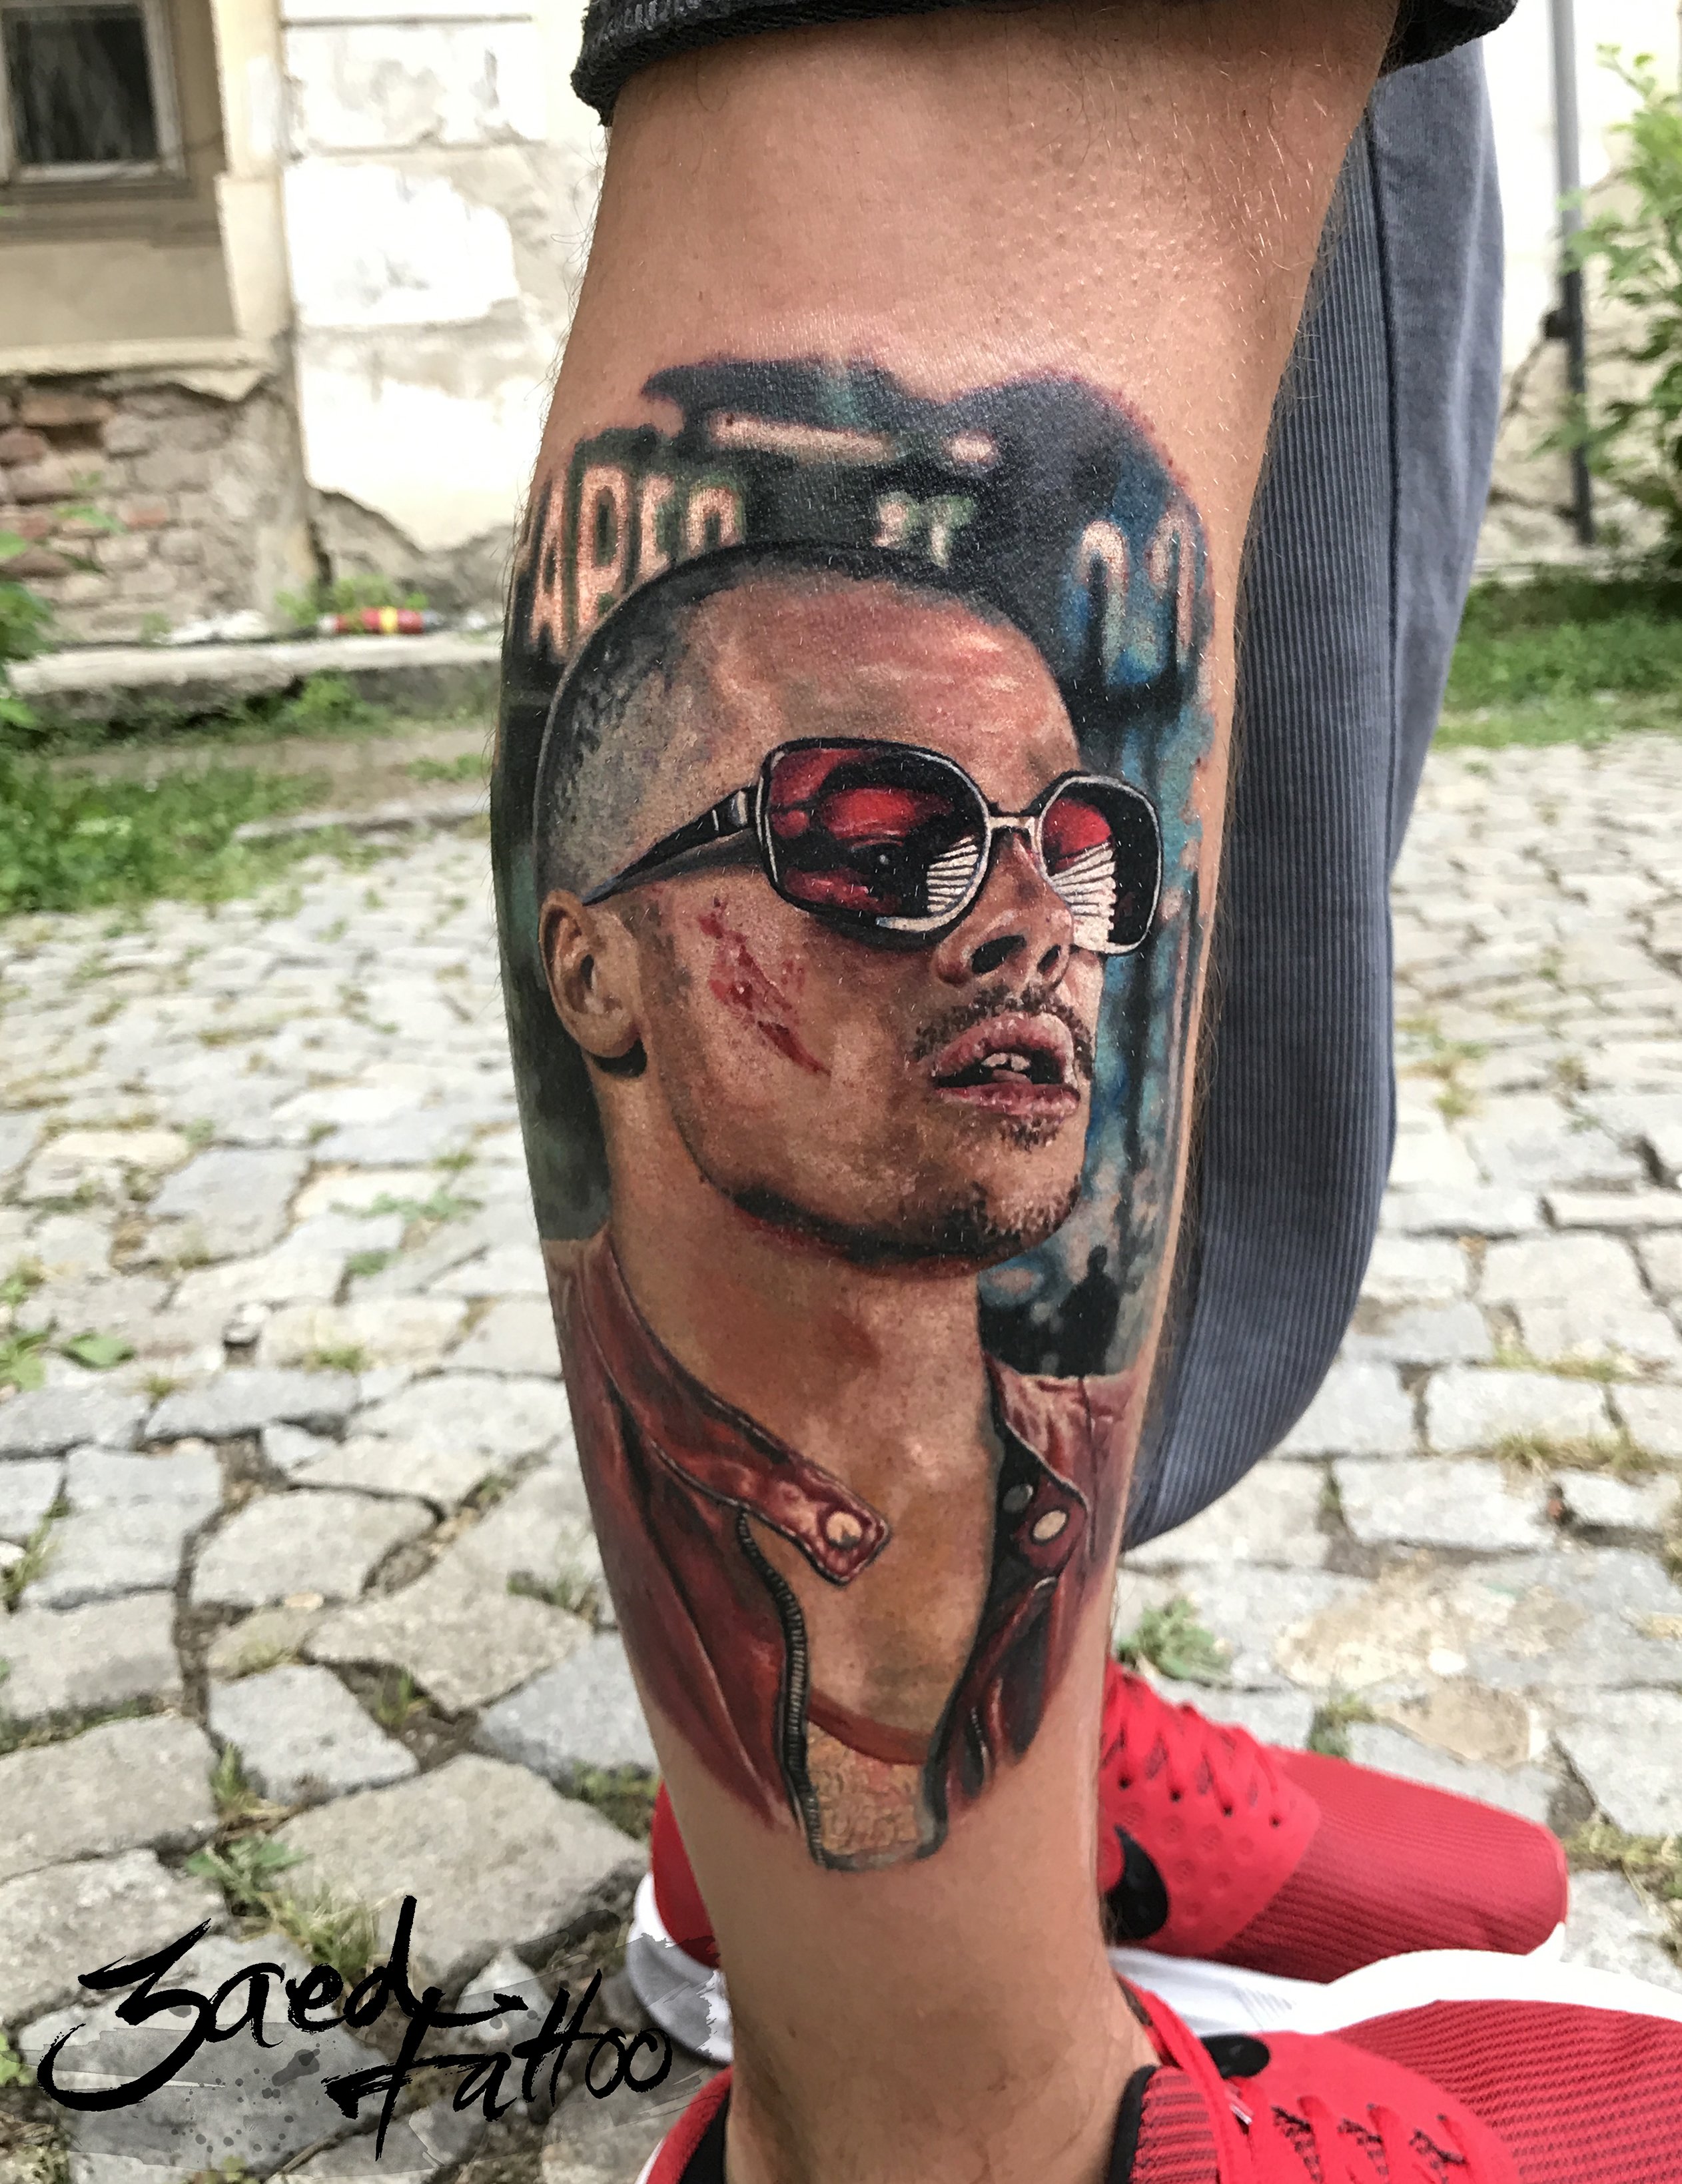 Tyler Durden fight club tattoo zaed